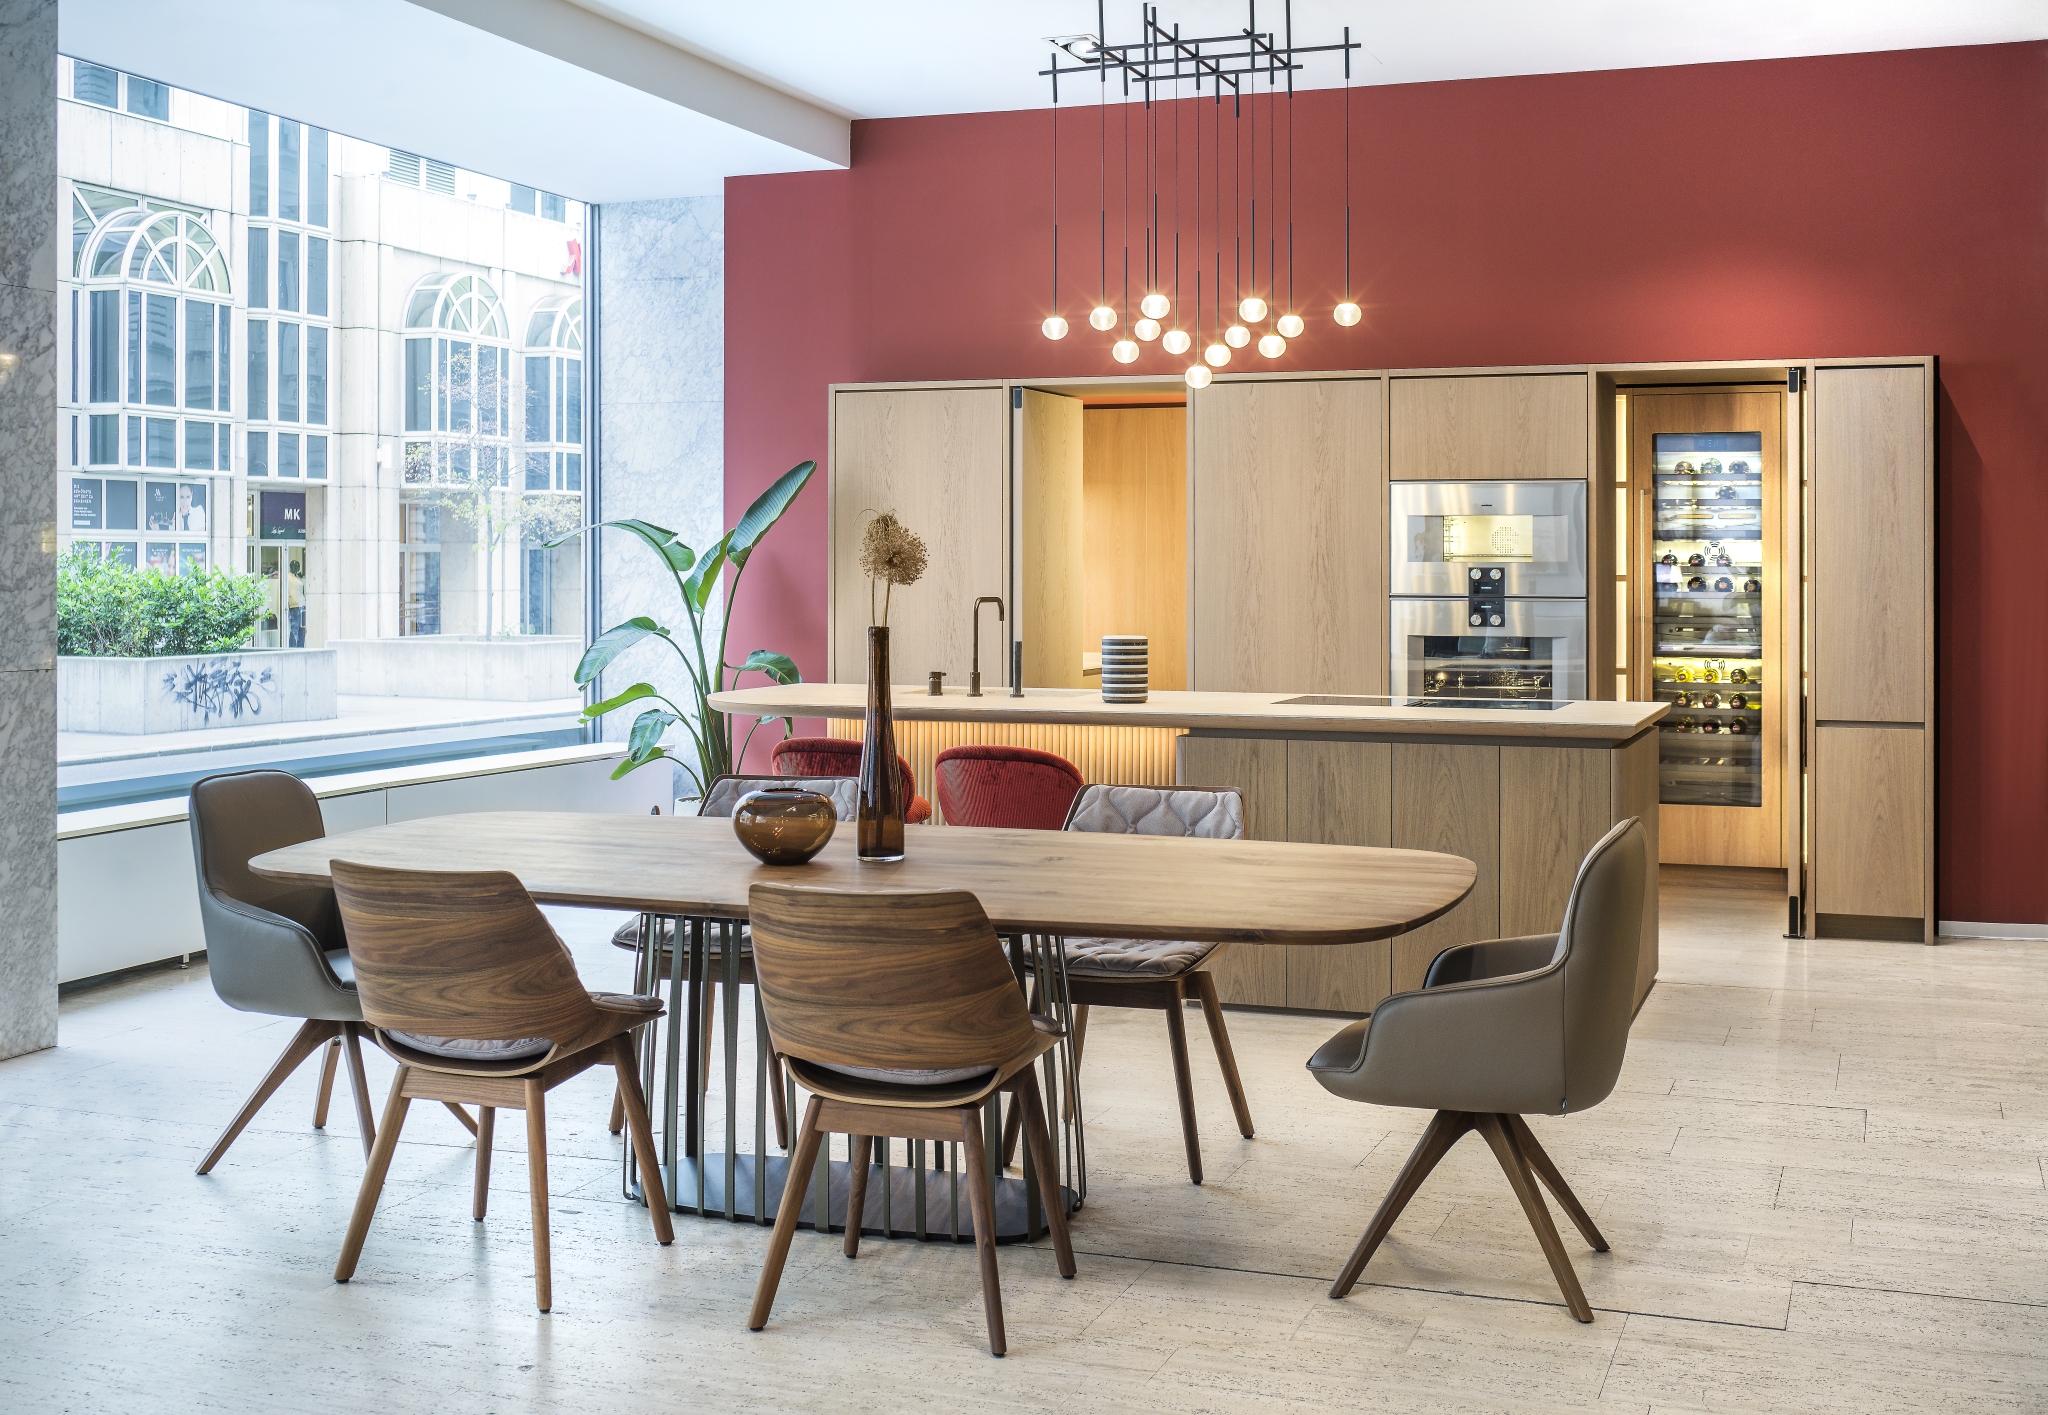 Eine moderne Küche und ein Essbereich mit einer kräftigen roten Akzentwand, Holzschränken, einem integrierten Weinkühlschrank und einem stilvollen ovalen Tisch, umgeben von gemischten Stuhldesigns unter einem eleganten Kronleuchter im Industriestil.